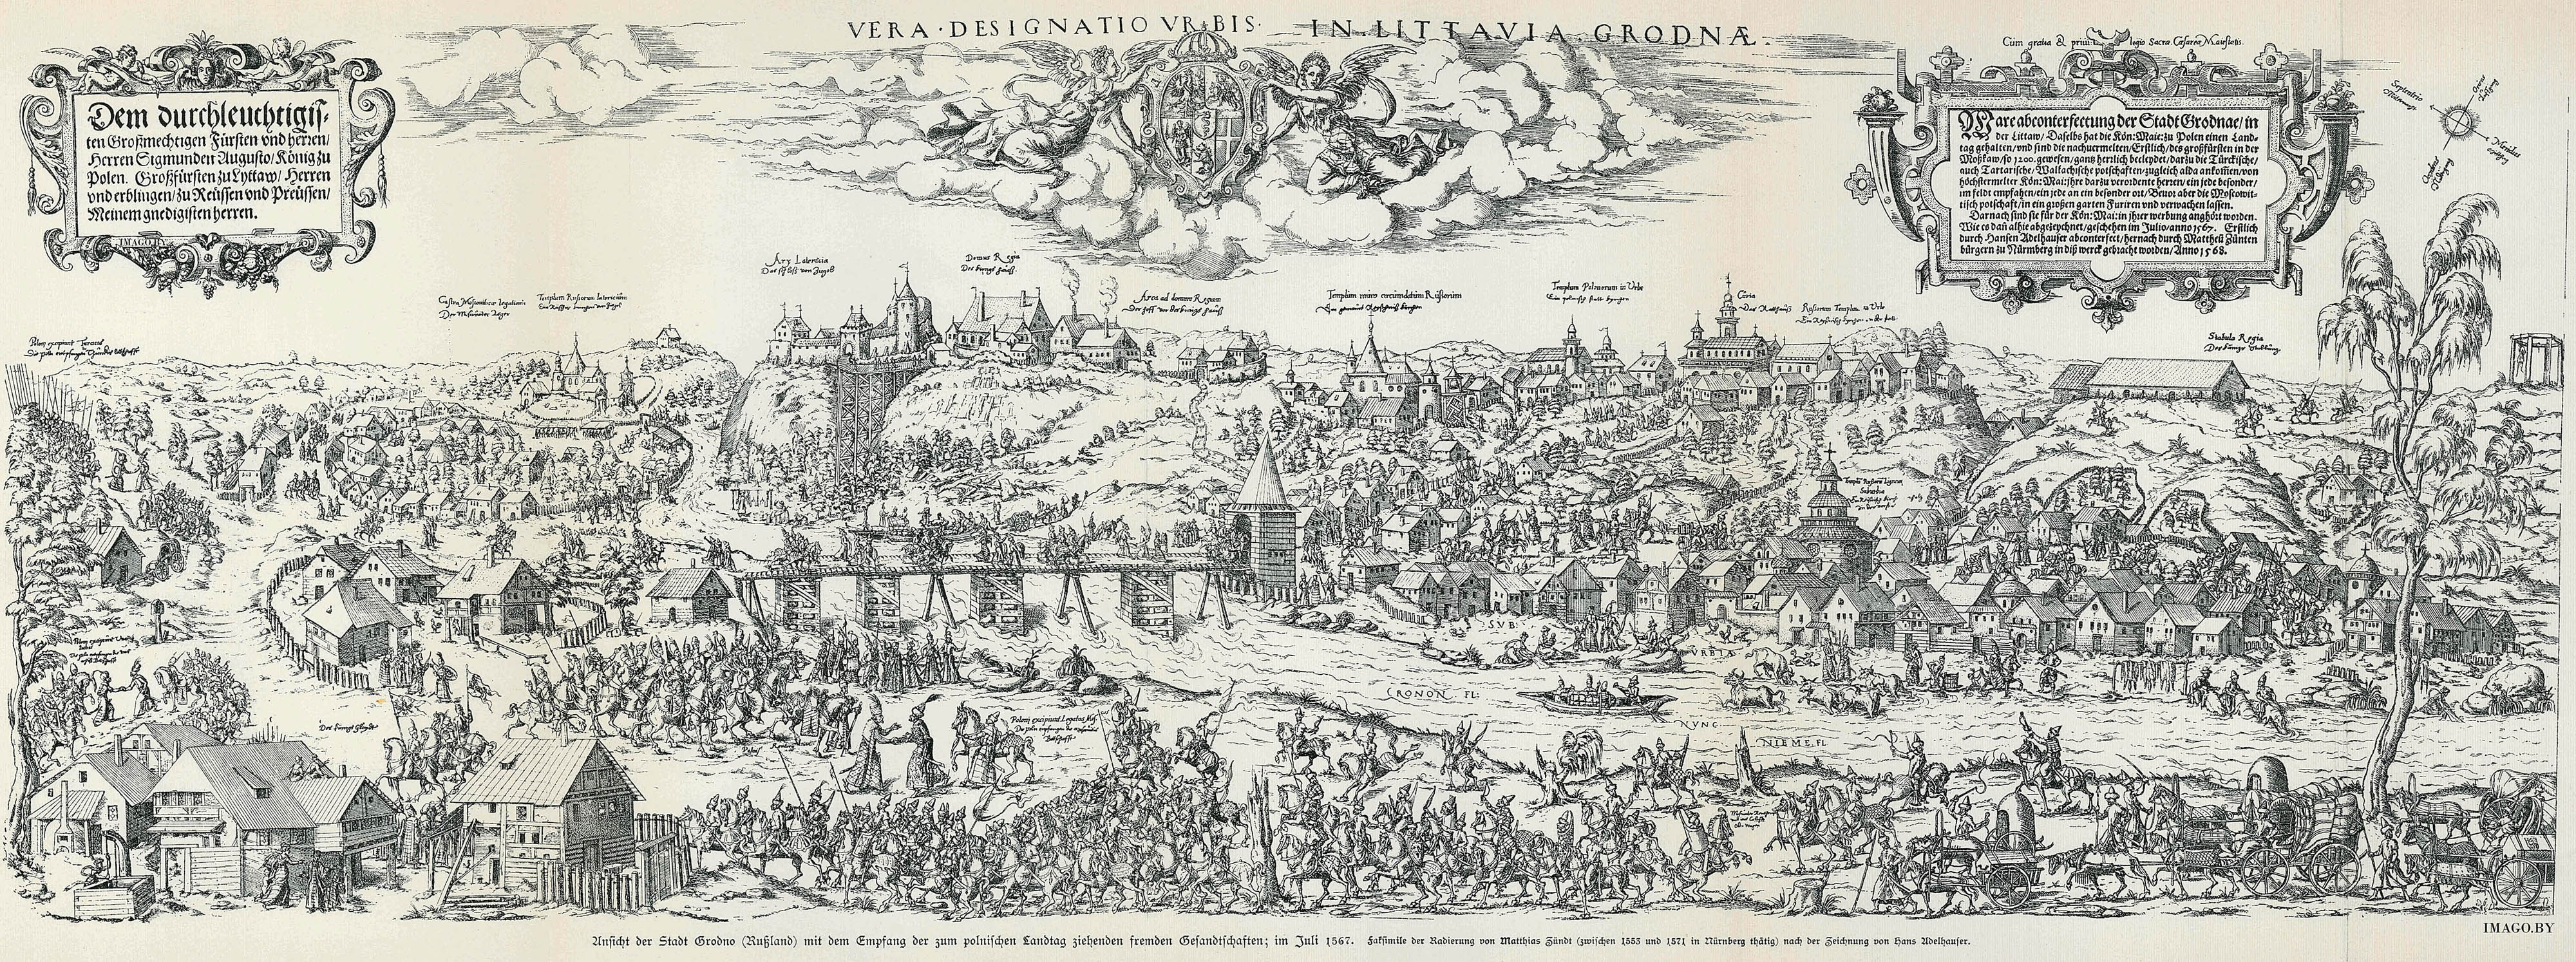 Гародня 1567 год. VERA DESIGNATIO VRBIS IN LITTAVIA GRODNAE